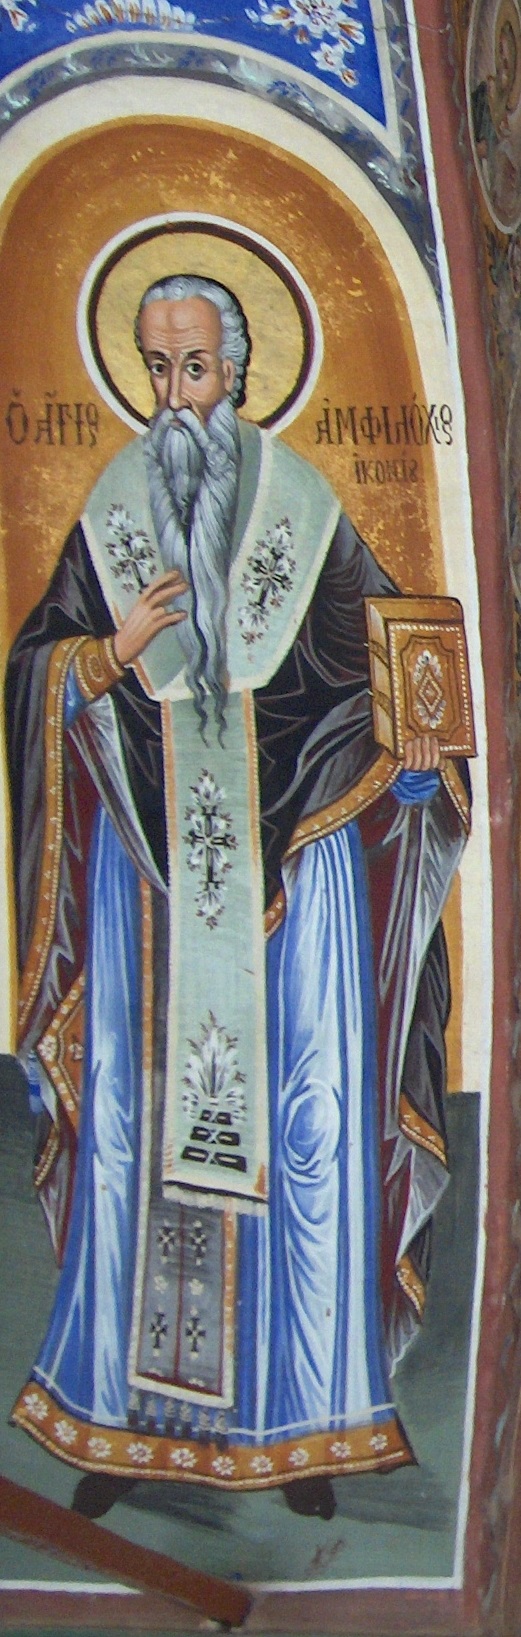 Άγιος Αμφιλόχιος Επίσκοπος Ικονίου - Άγιον Όρος, Μεγίστη Λαύρα